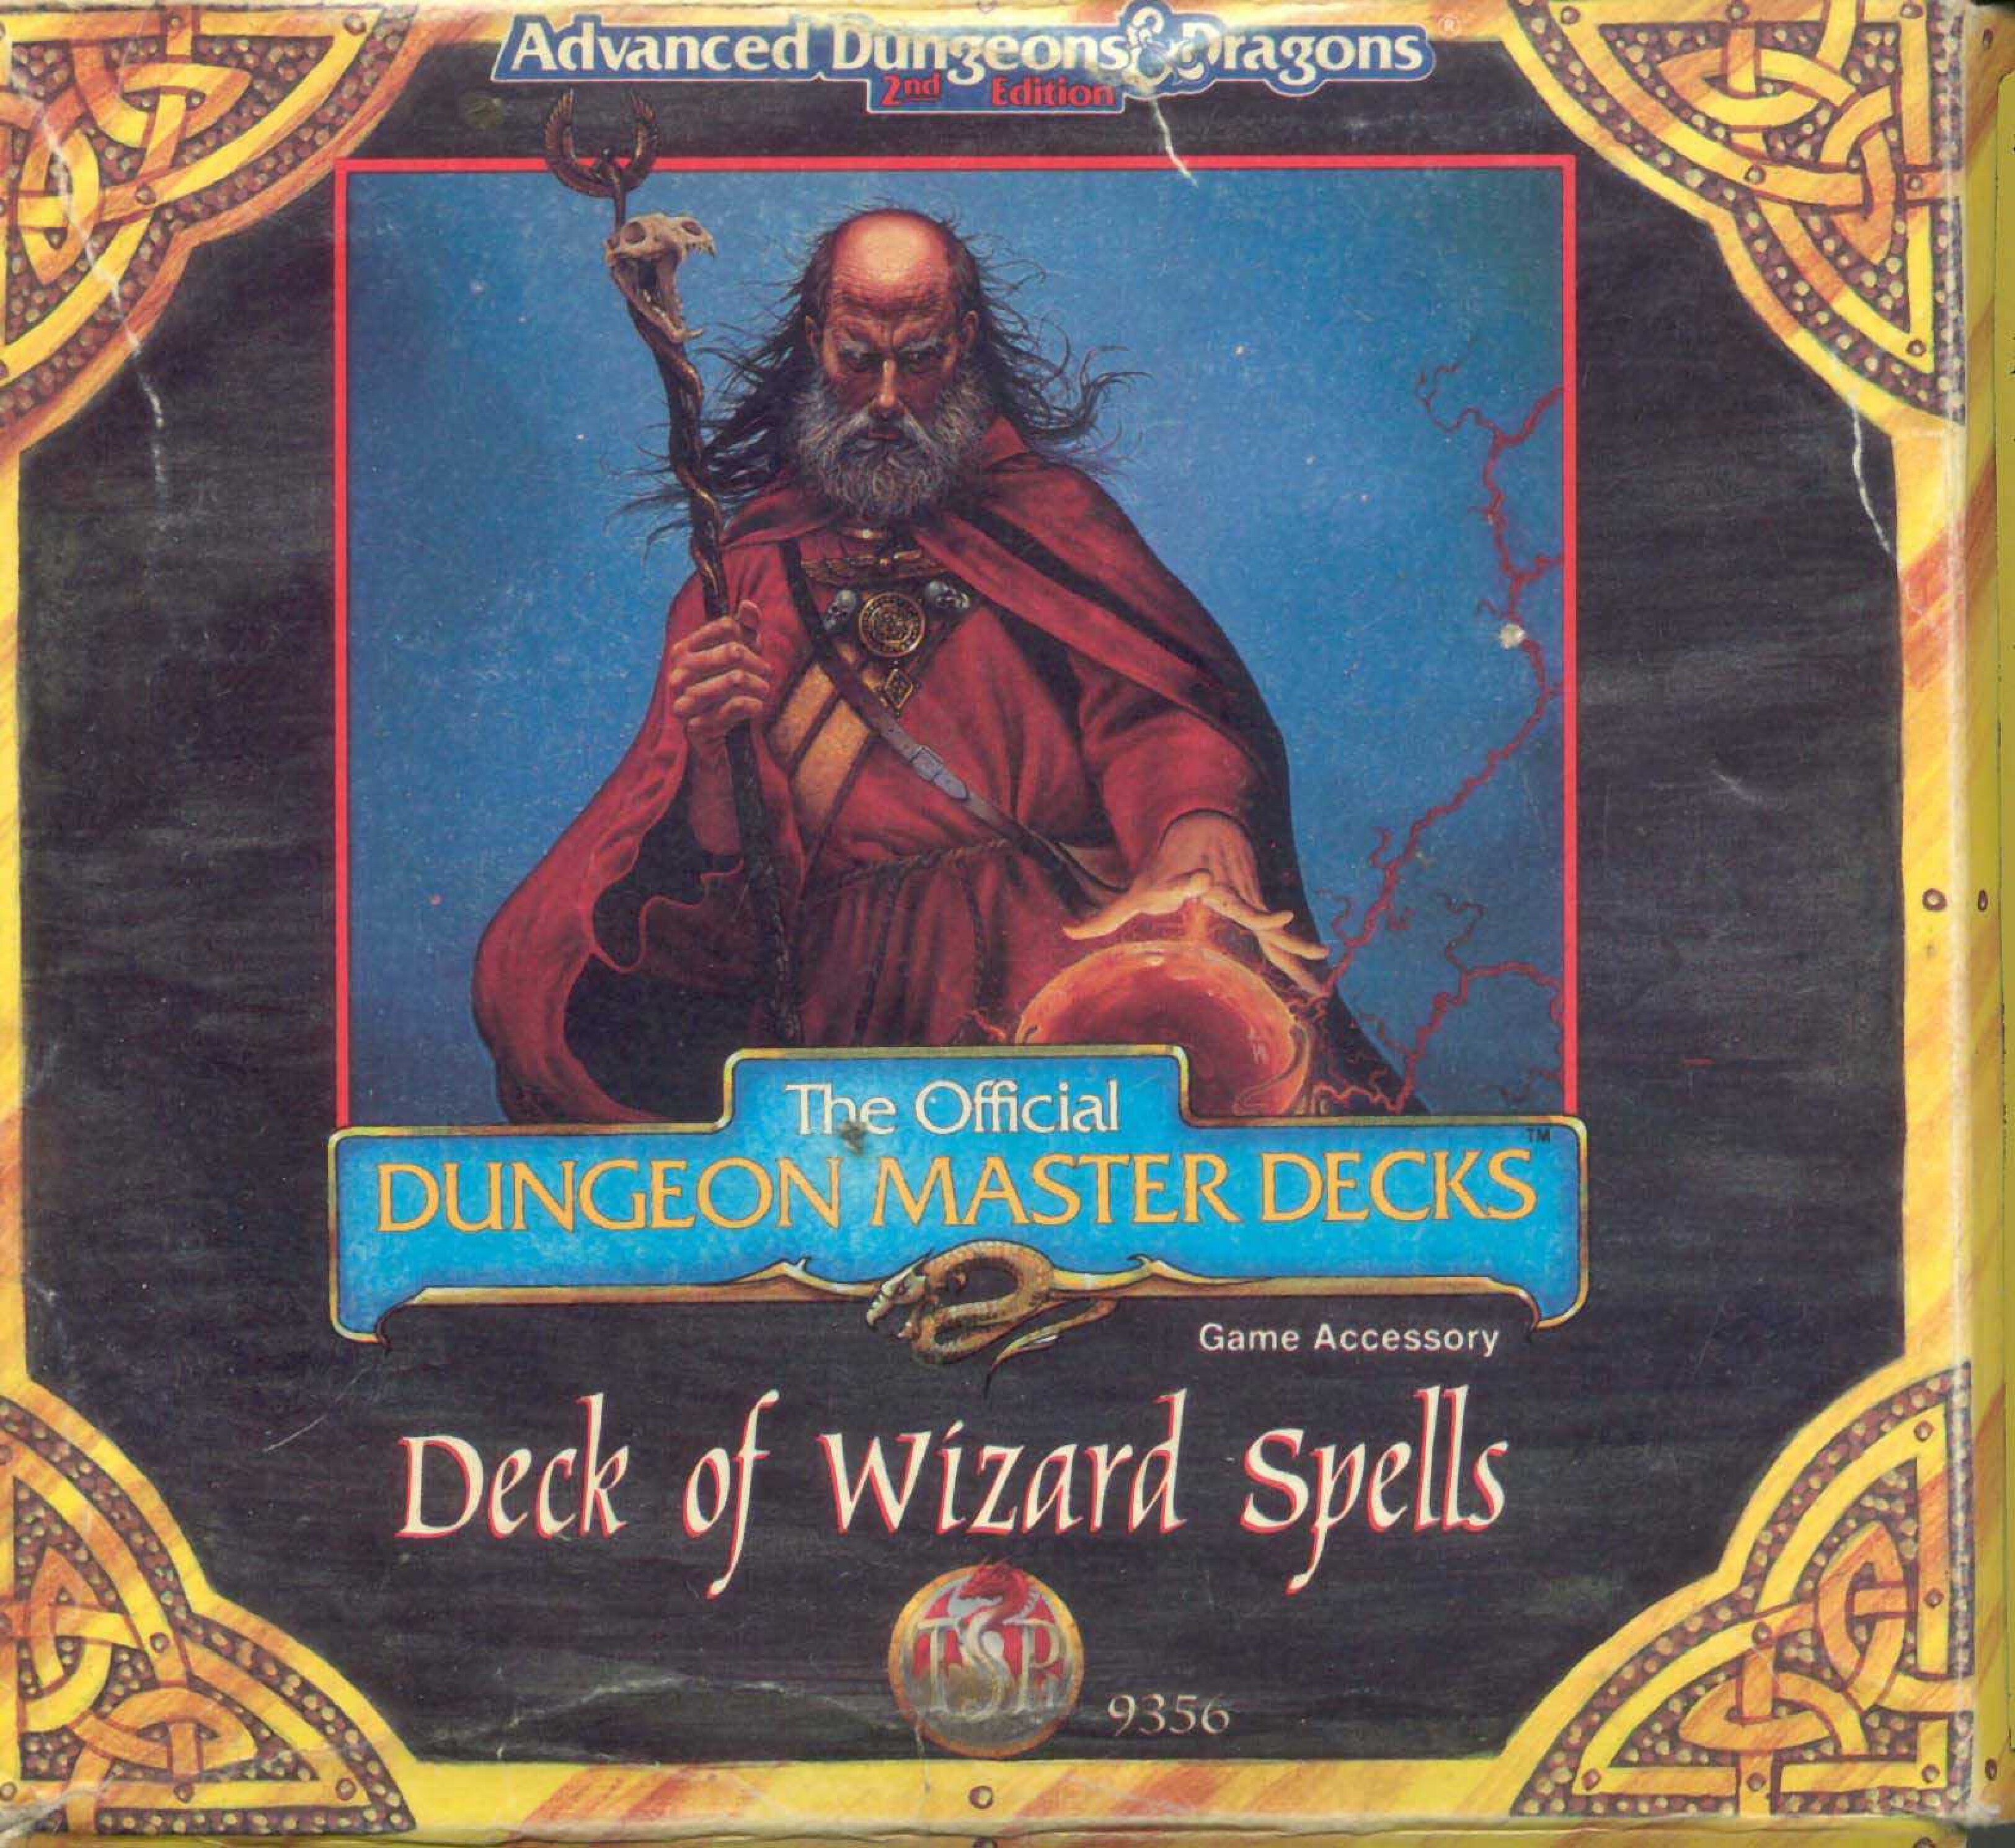 CR1 - Deck of Wizard Spells (9356)